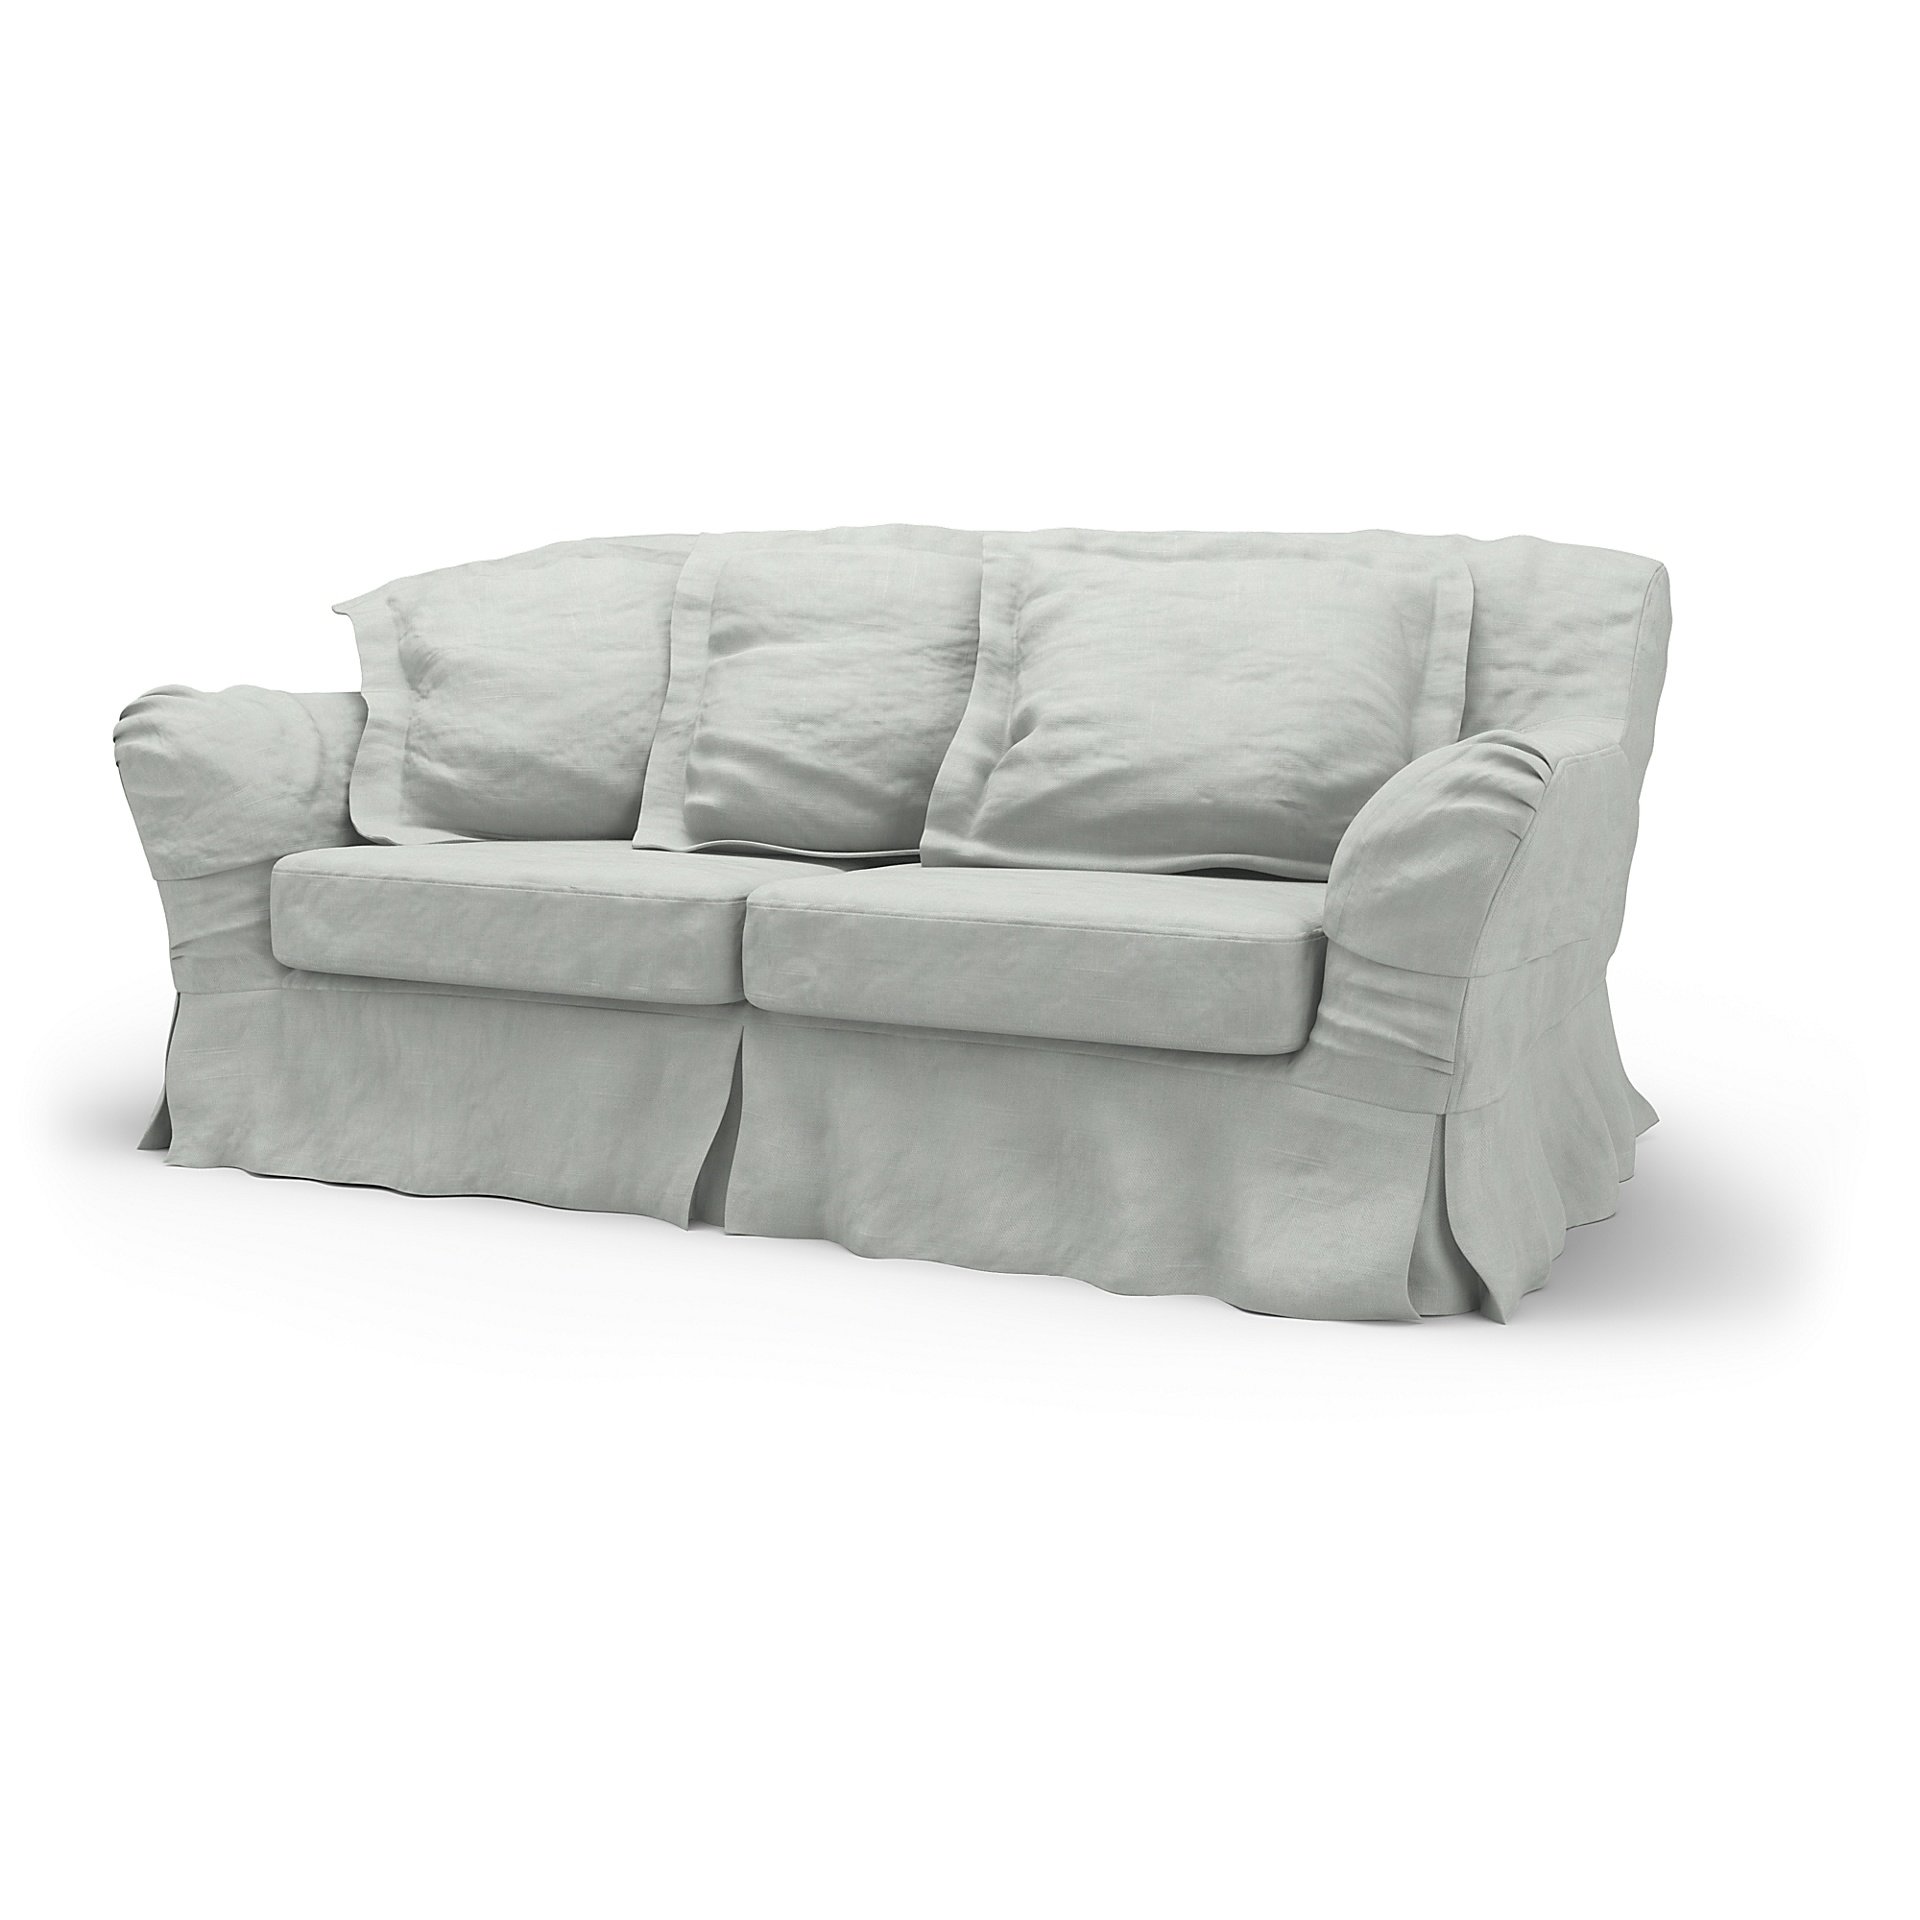 IKEA - Tomelilla 2 Seater Sofa Cover, Silver Grey, Linen - Bemz